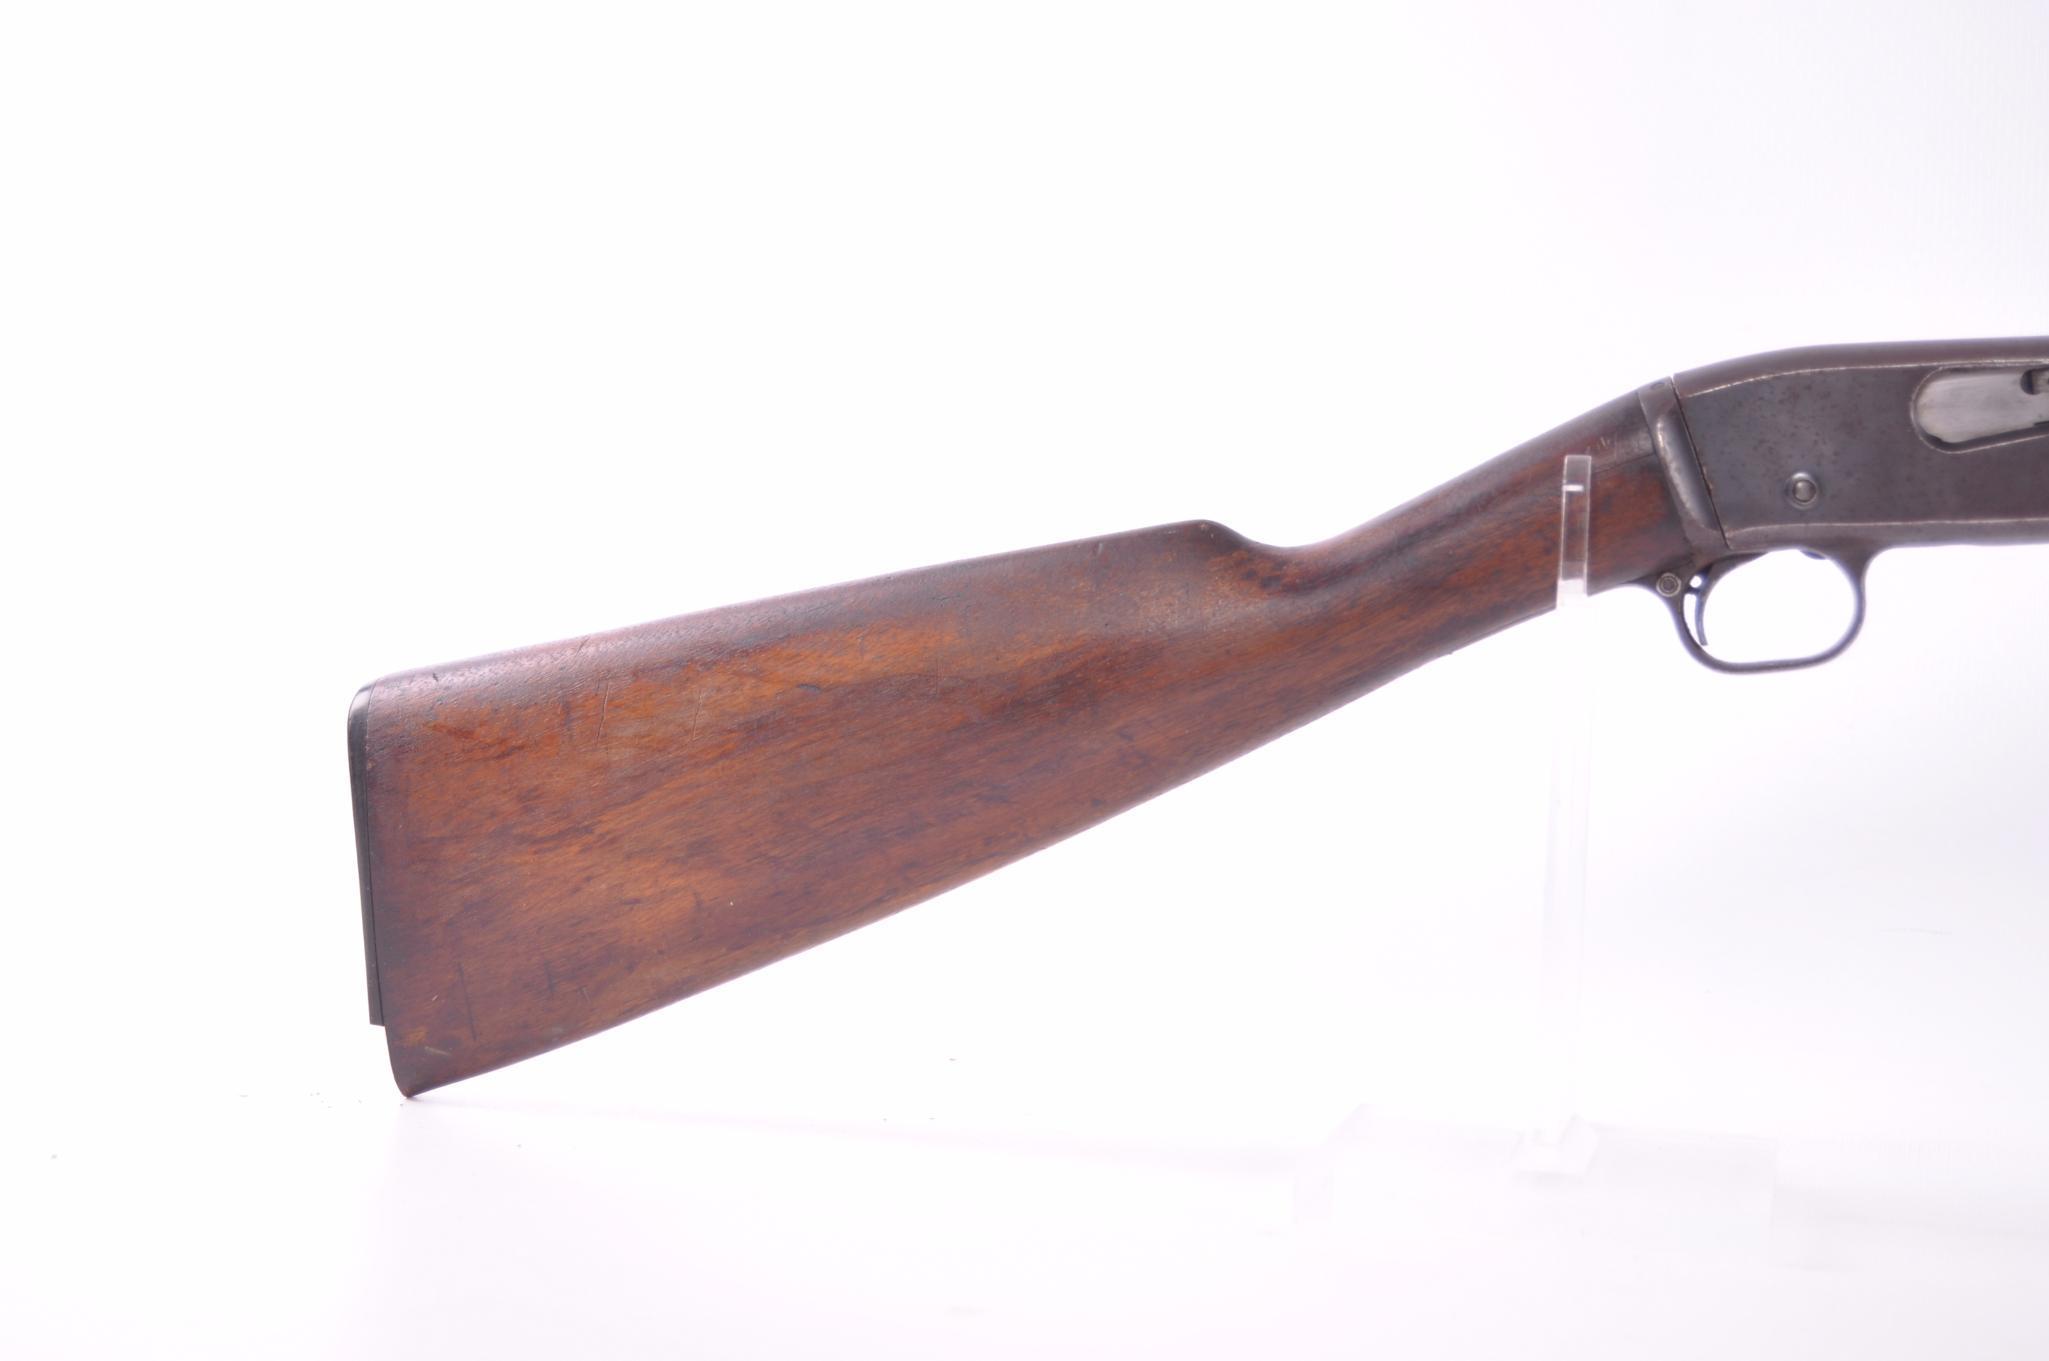 Remington model 12-a 22 S,L,LR cal. pump action rifle